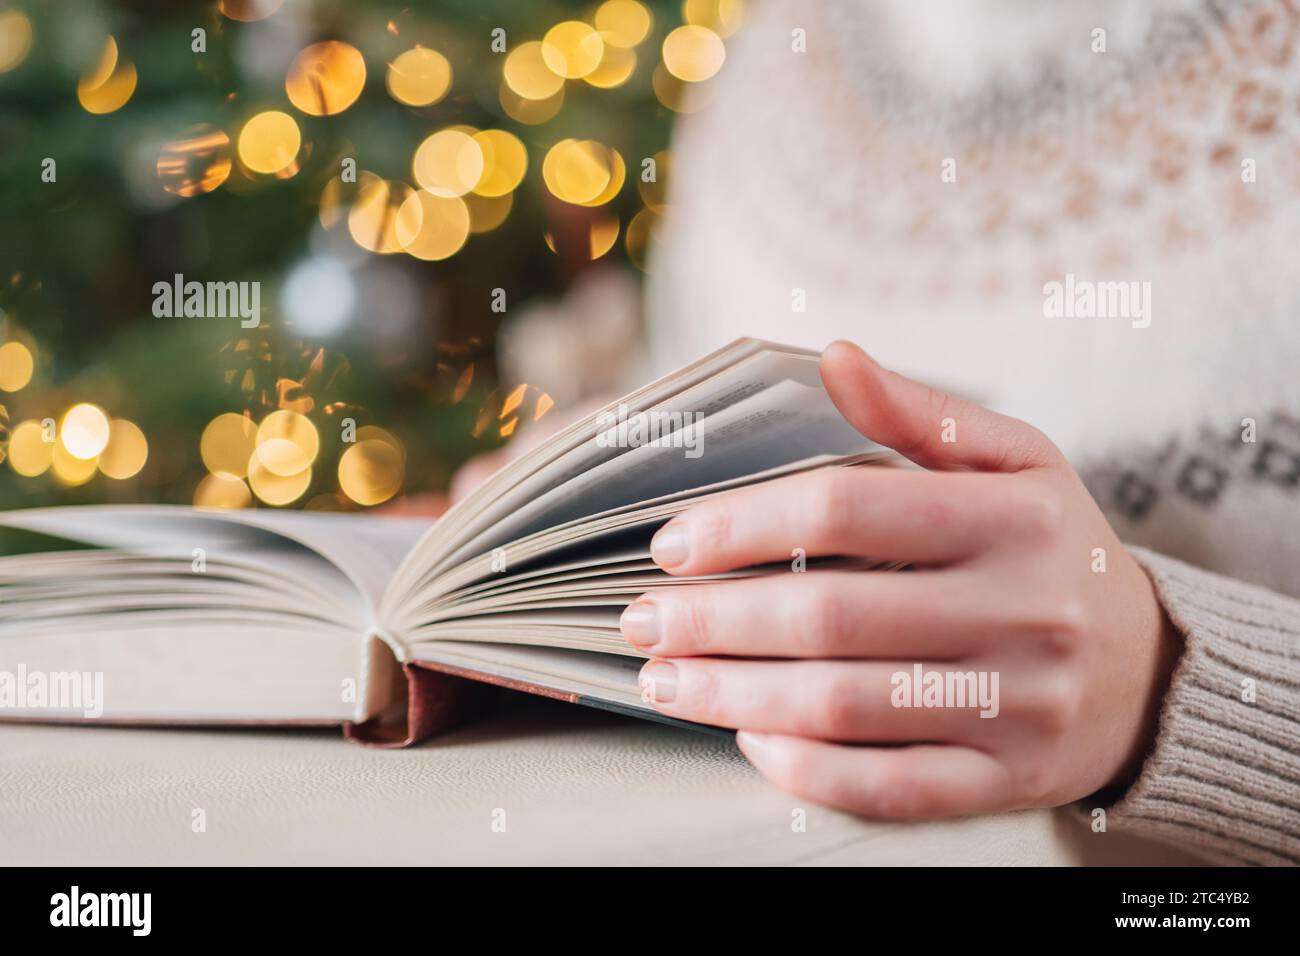 Libri di Natale.le mani girano le pagine di un libro su un albero di Natale con sfondo ghirlande.libri su temi natalizi e invernali.libri invernali.accogliente Foto Stock